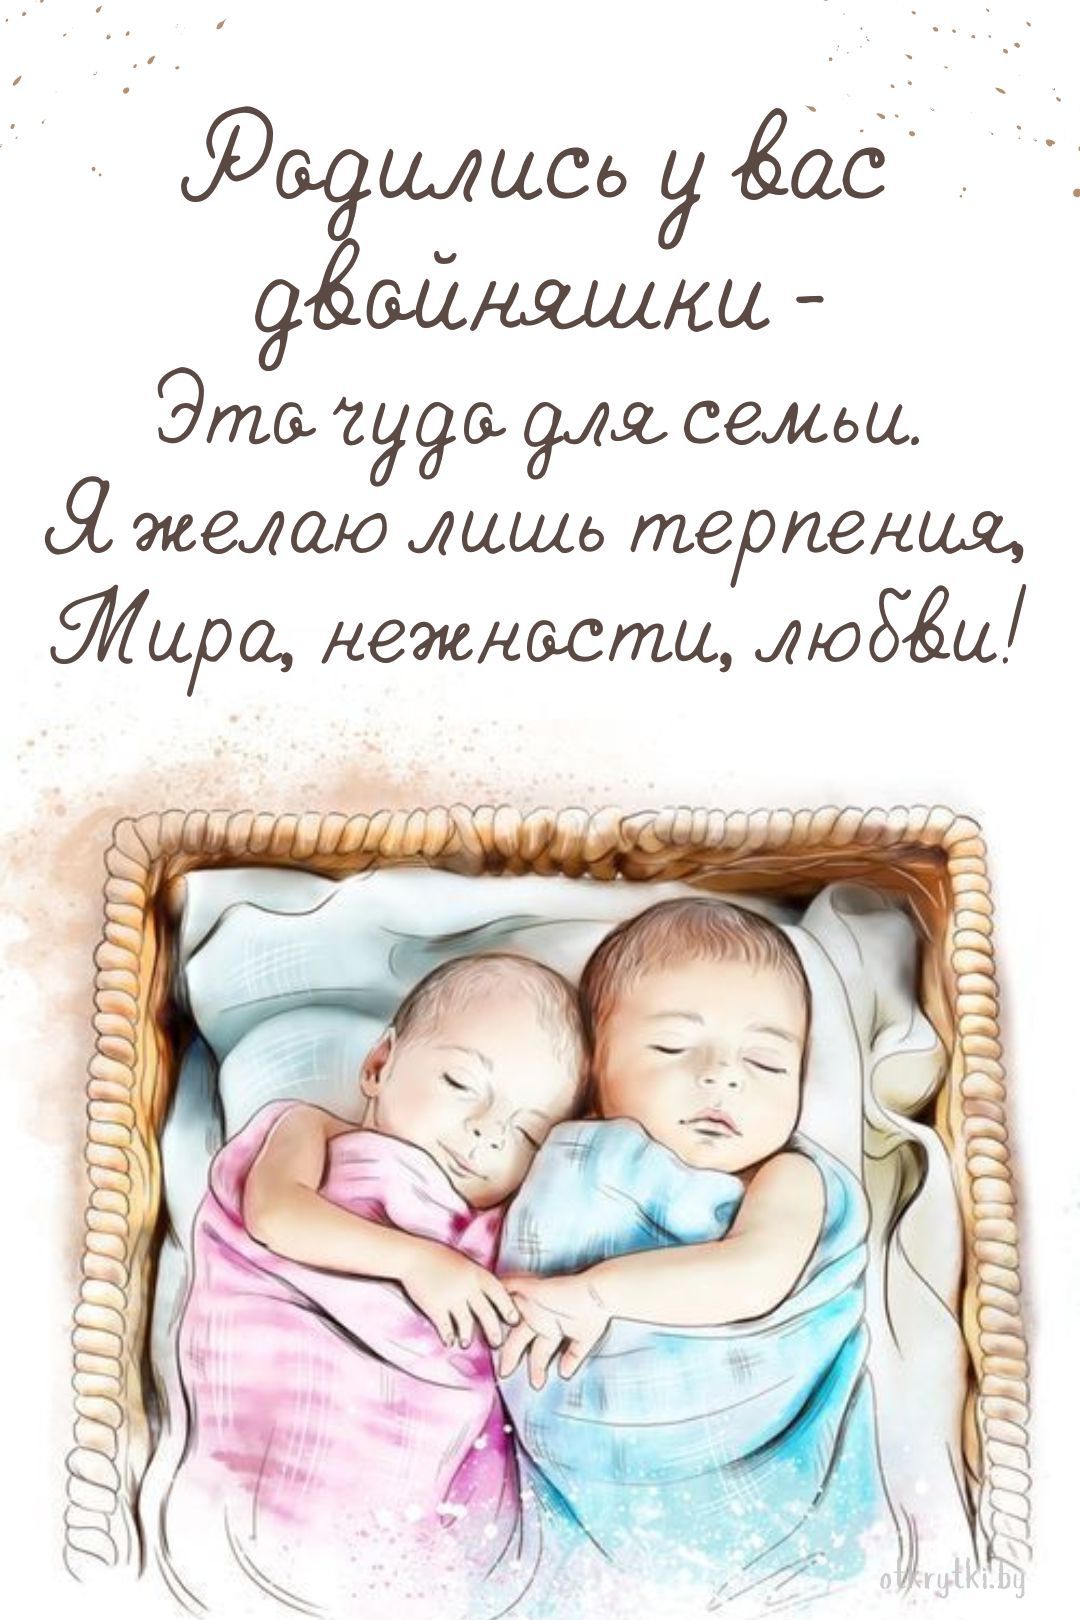 Картинка с рождением двойни мальчика и девочки